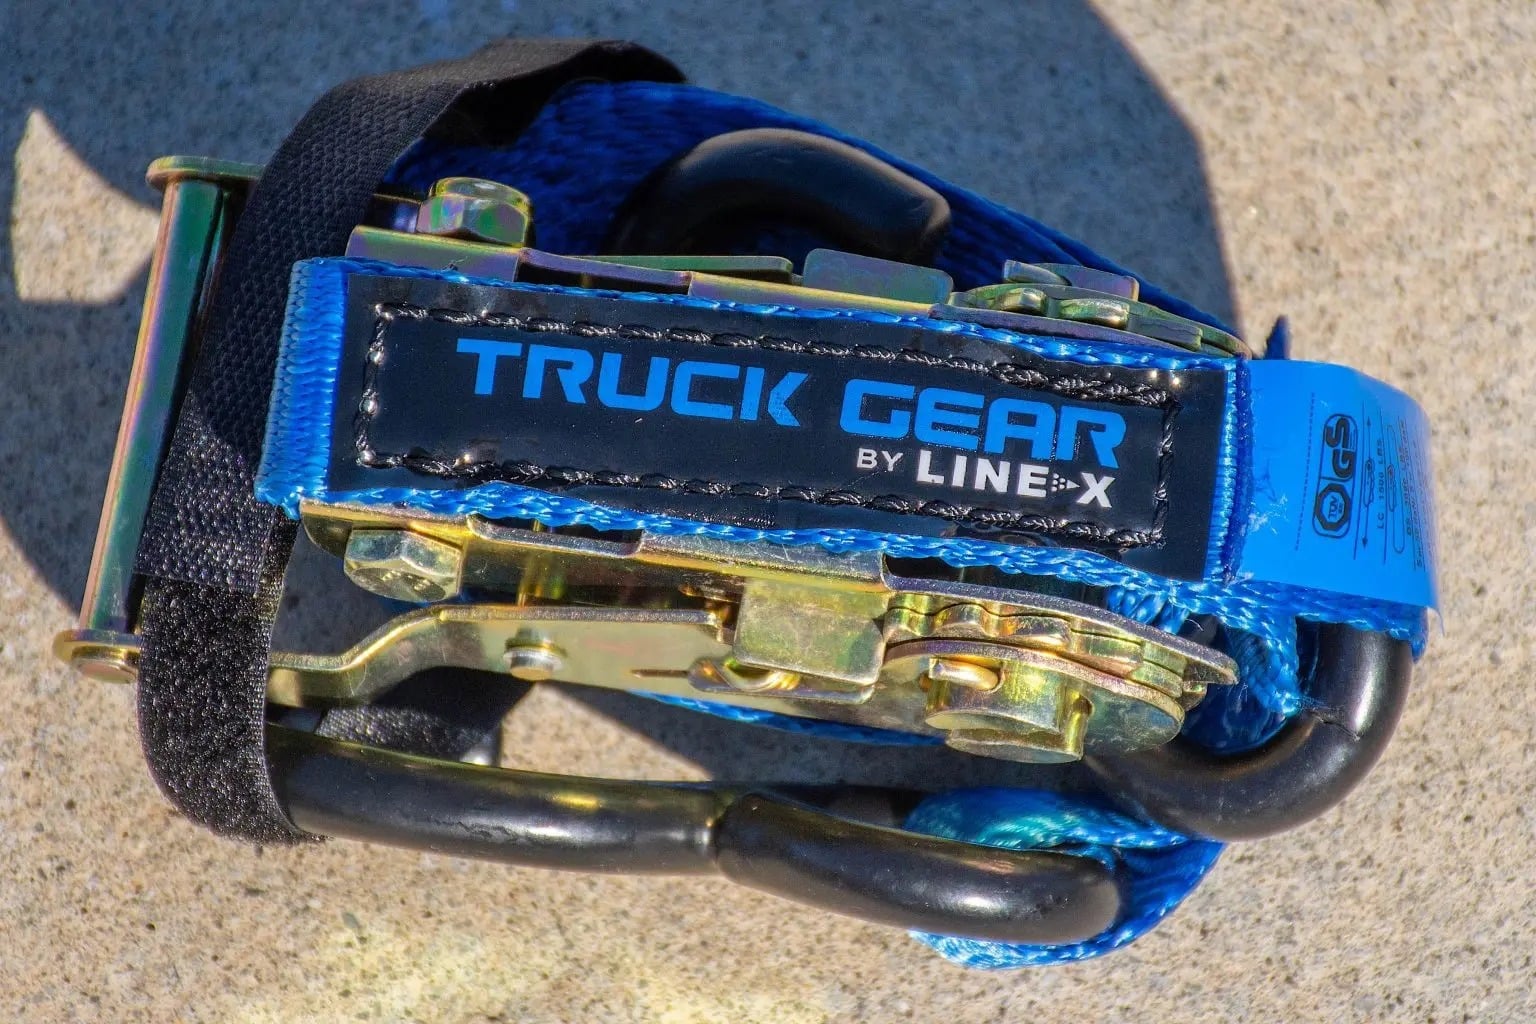 Truck Gear by Line-X kit.